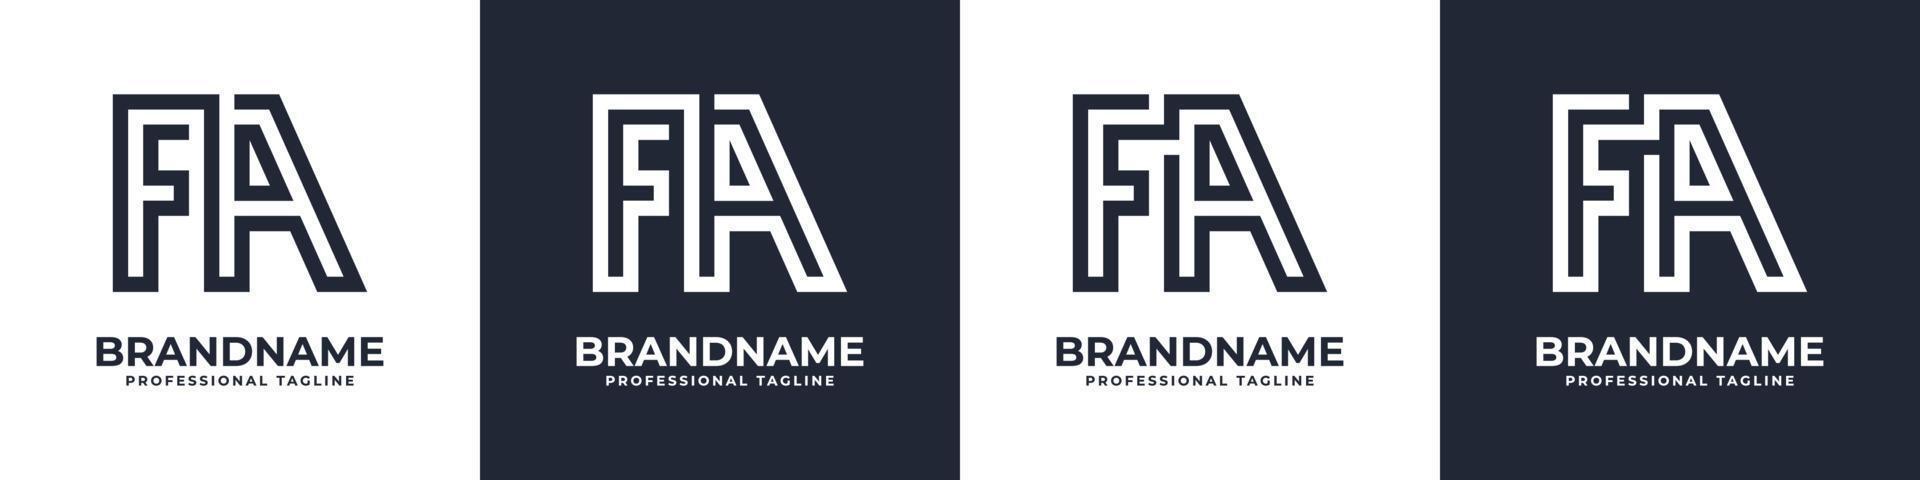 semplice fa monogramma logo, adatto per qualunque attività commerciale con fa o af iniziale. vettore